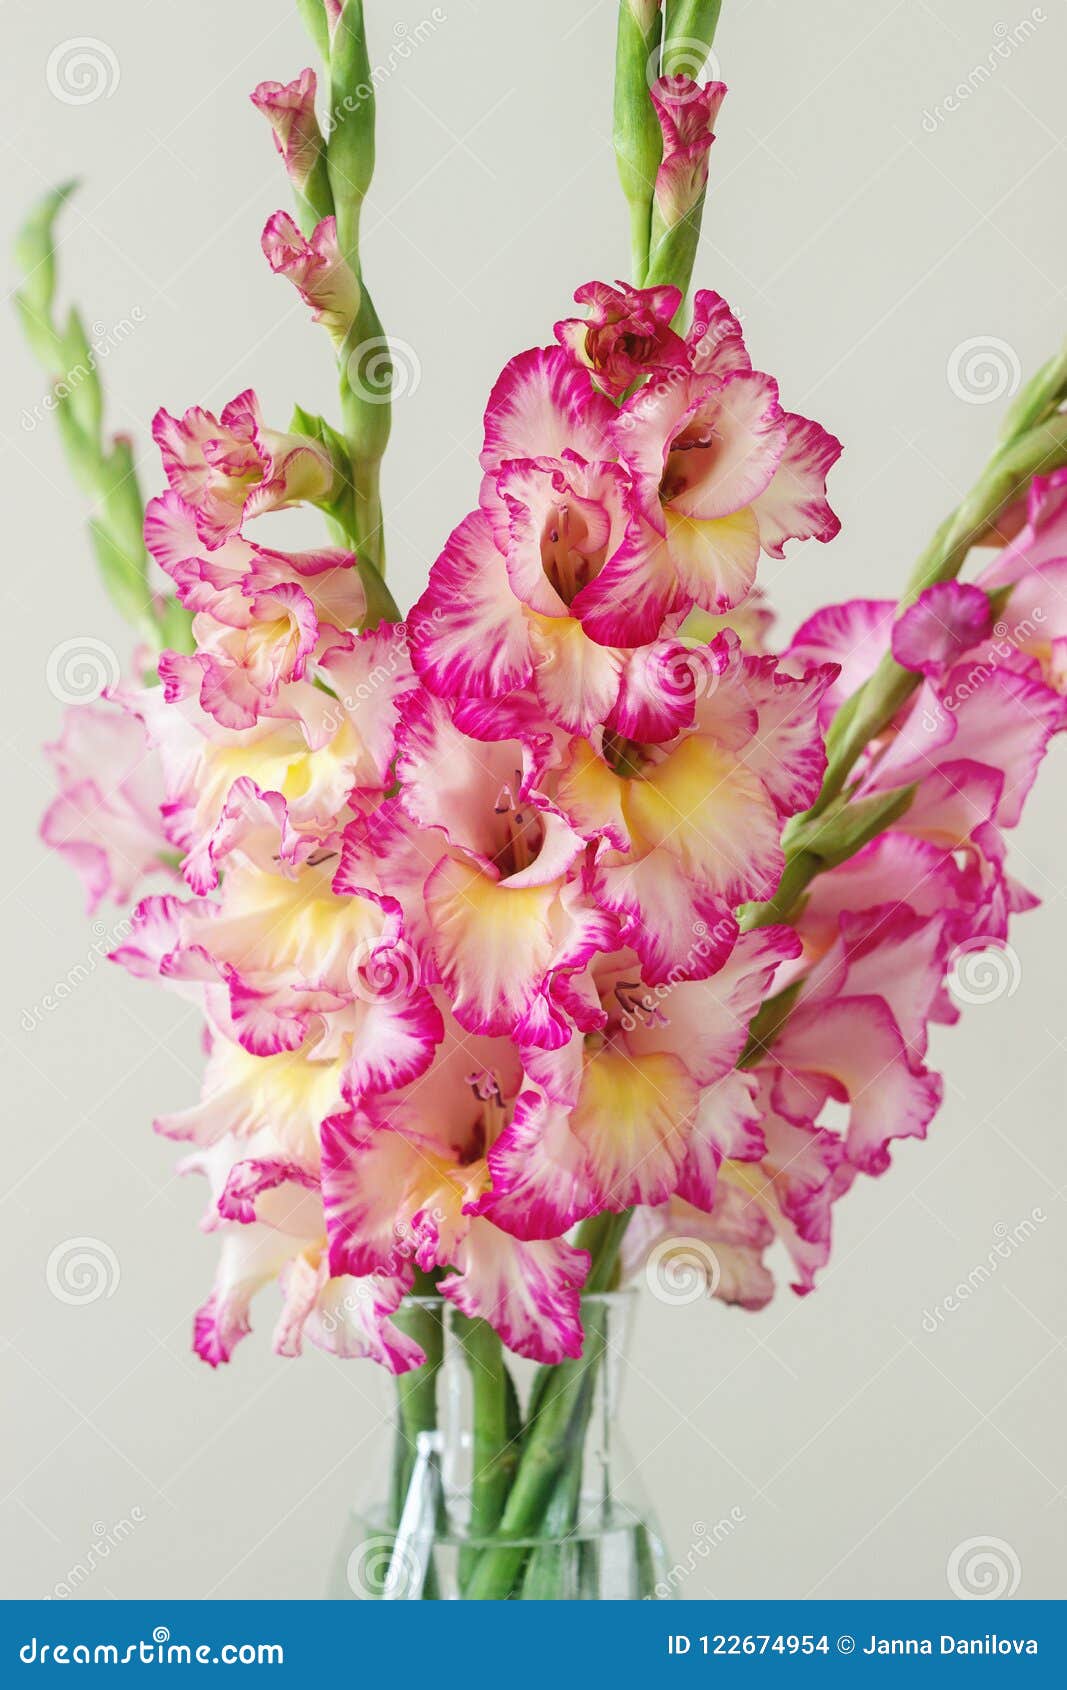 Feliz cumpleaños, hadazul!! Un-ramo-de-gladiolos-multicolores-en-florero-cristal-fondo-ligero-tarjeta-felicitaci%C3%B3n-122674954